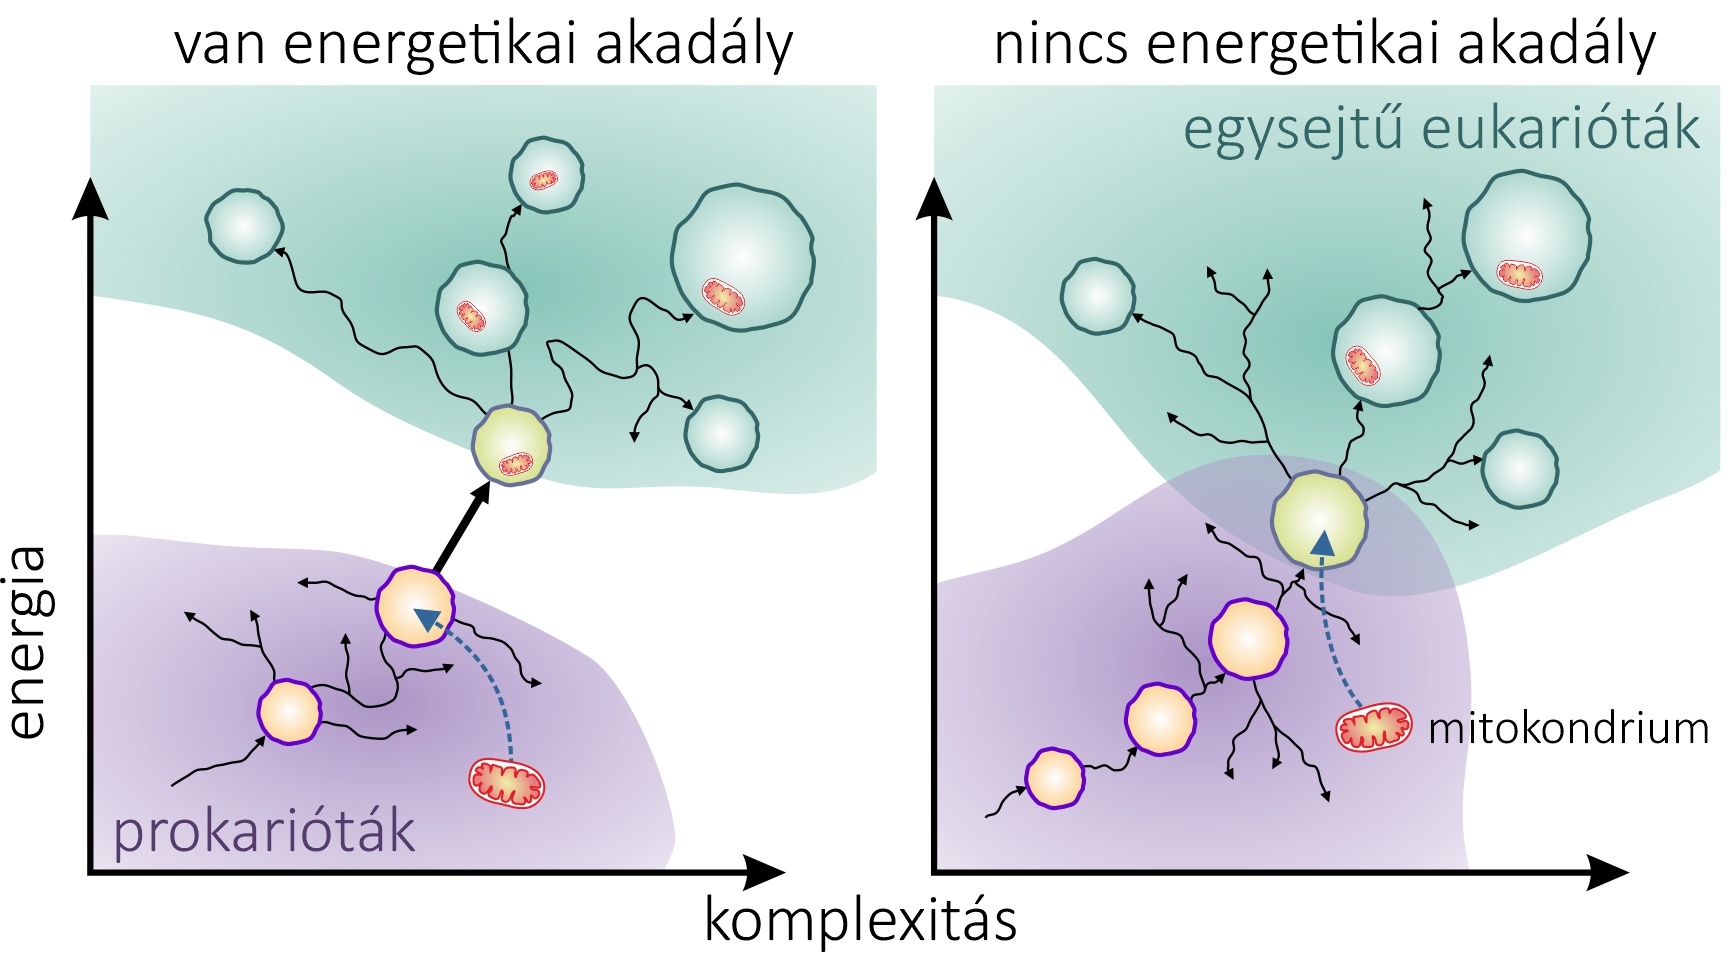 A prokarióták és az eukarióták közötti szakadék. A modern prokarióták és eukarióták között egyértelmű komplexitásbeli szakadék van, de a mögöttes okokat nem ismerjük. Balra: A két domén közötti energetikai gát lehetetlenné teszi a direkt átmeneteket a prokariótáktól az eukariótákig. Talán csak a mitokondrium (piros sejt) volt képes a szükséges energiatöbbletet nyújtani a szakadék áthidalásához. Jobbra: Az alternatív elképzelés szerint nincs energetikai akadály, és a két komplexitási tartomány tulajdonképpen átfed egymással. A új, adaptív tulajdonságok fokozatos fejlődése lehetővé tehette az archaea gazda eukarióta tartományba való folyamatos áthaladást, és a mitokondrium csak később jelent meg. Forrás: (Zachar 2022) .